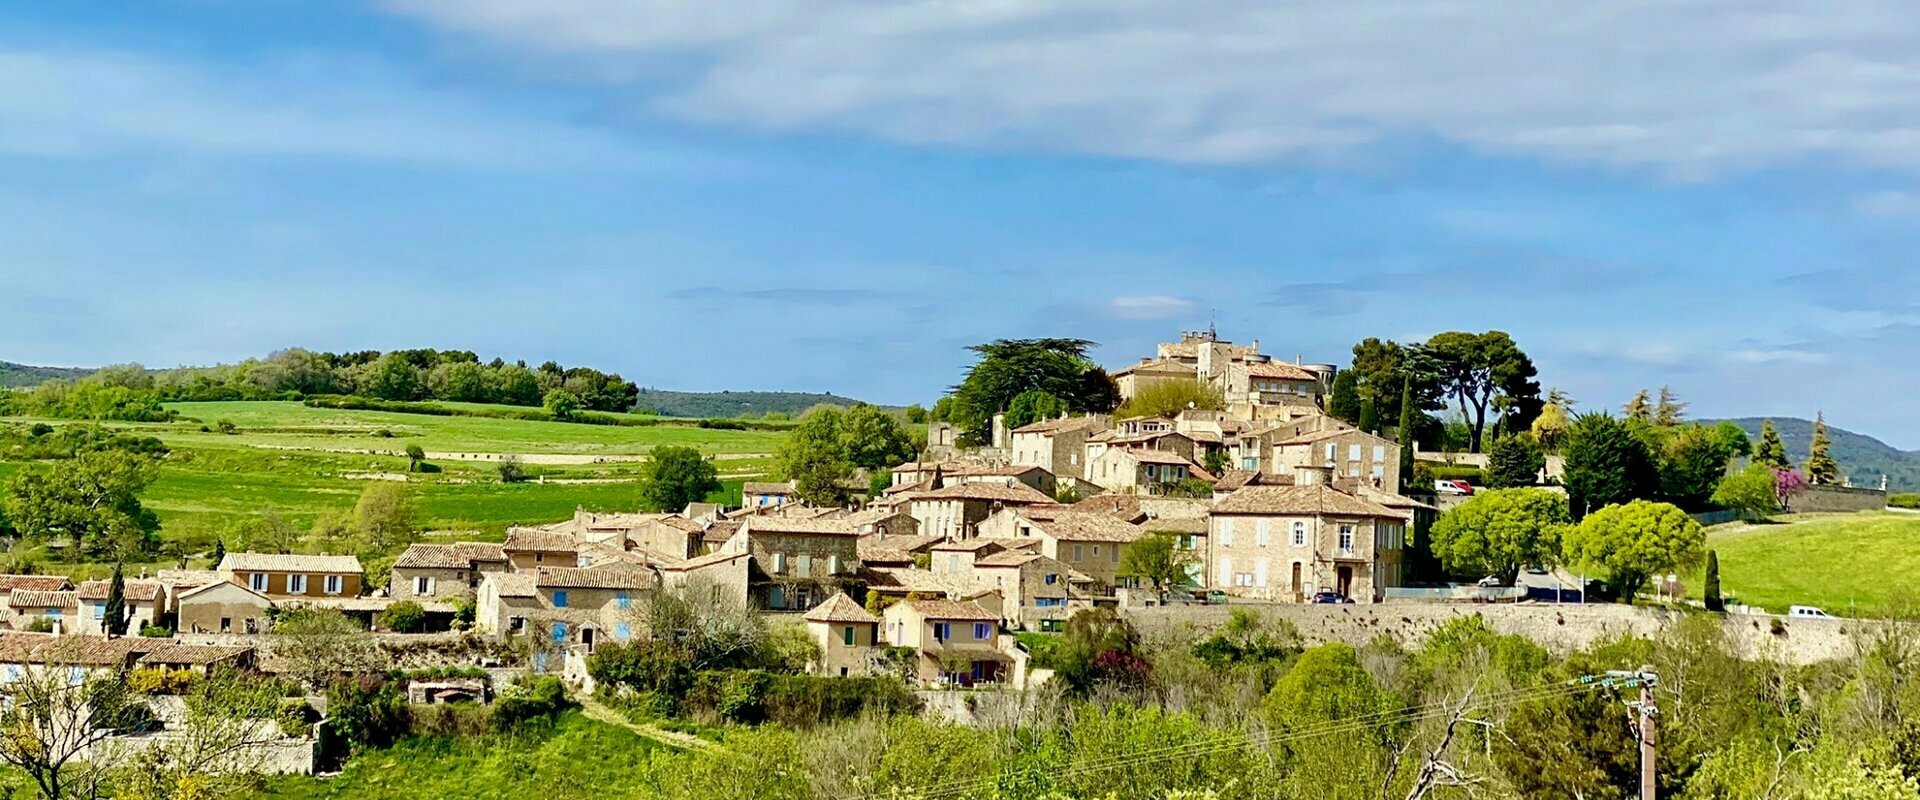 Bienvenue à Murs dans le Vaucluse, au cœur de la Provence